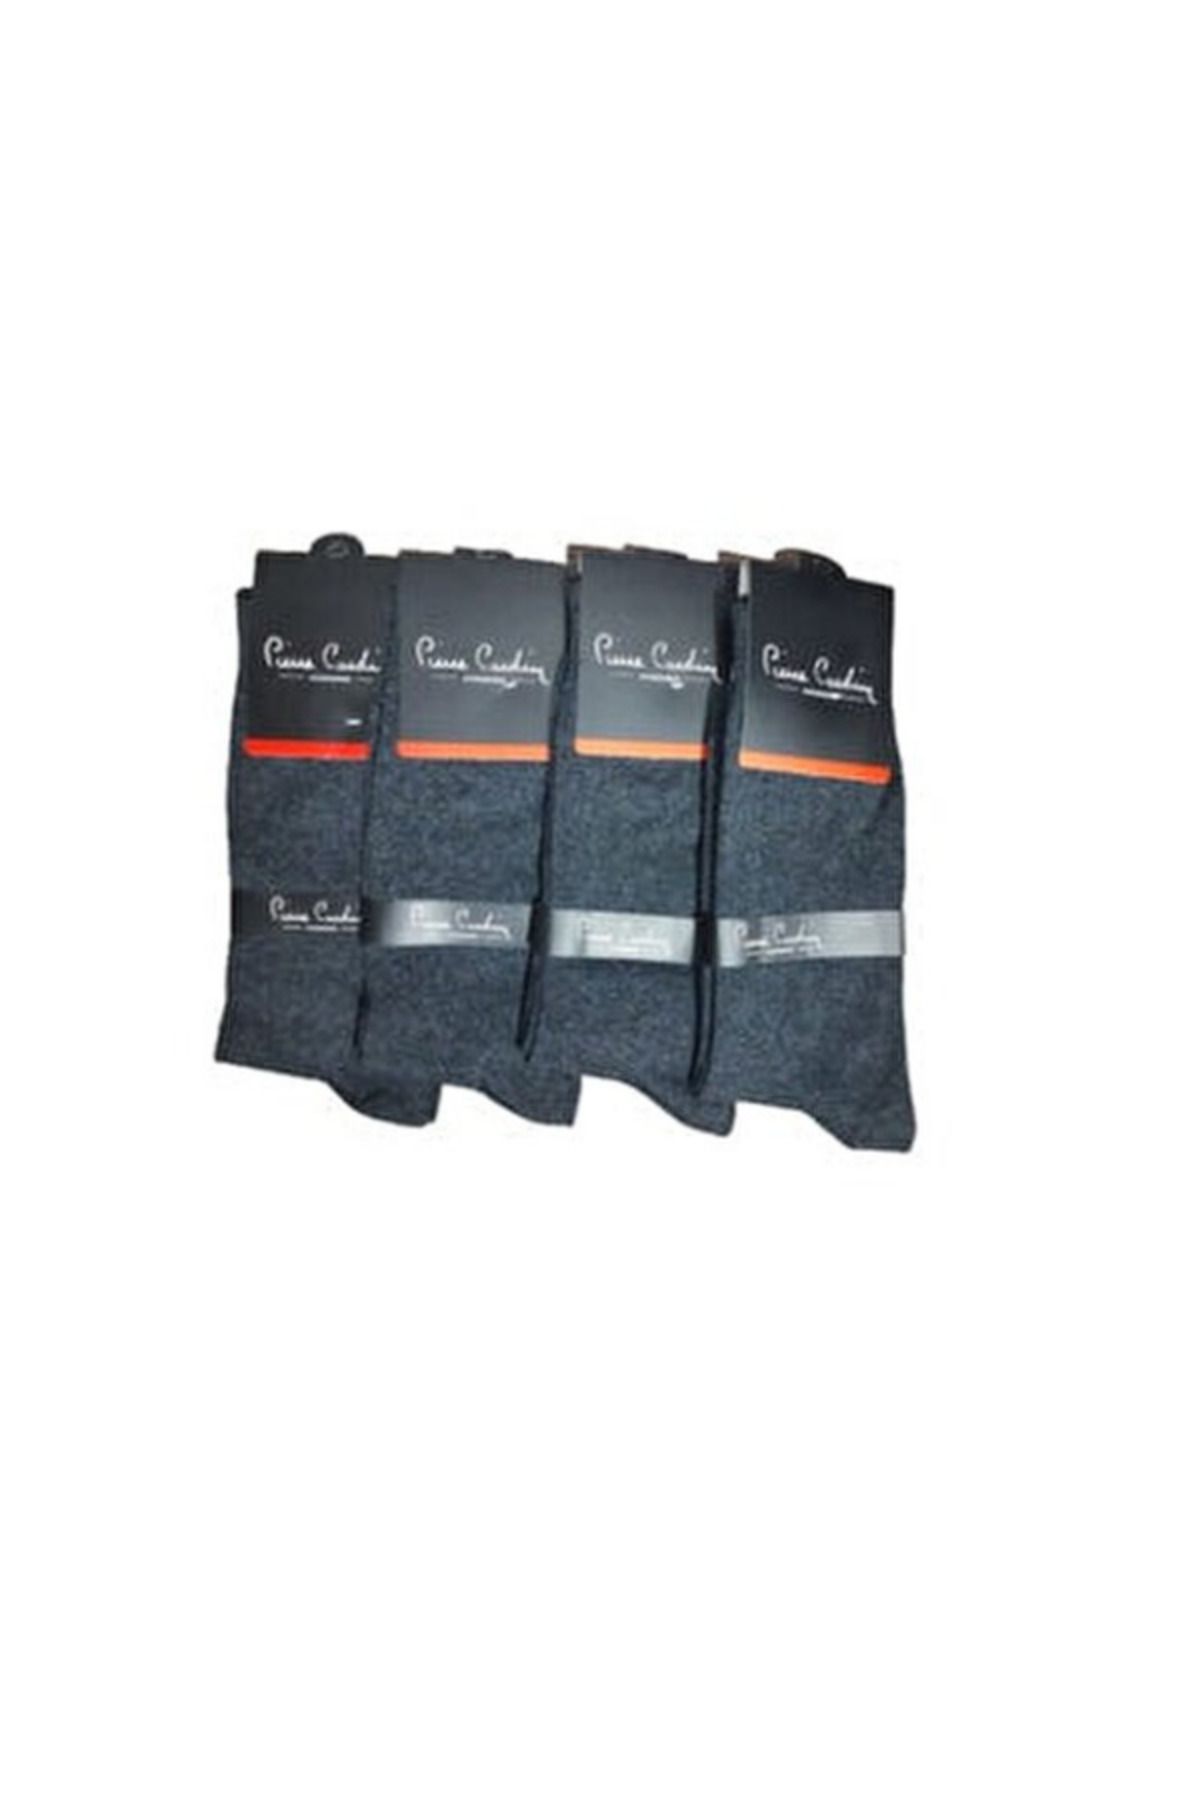 Sarar Erkek Cotton - Pierre Cardin Çorap Bambu Dikişsiz Siyah ve Füme Renk 4 Çift